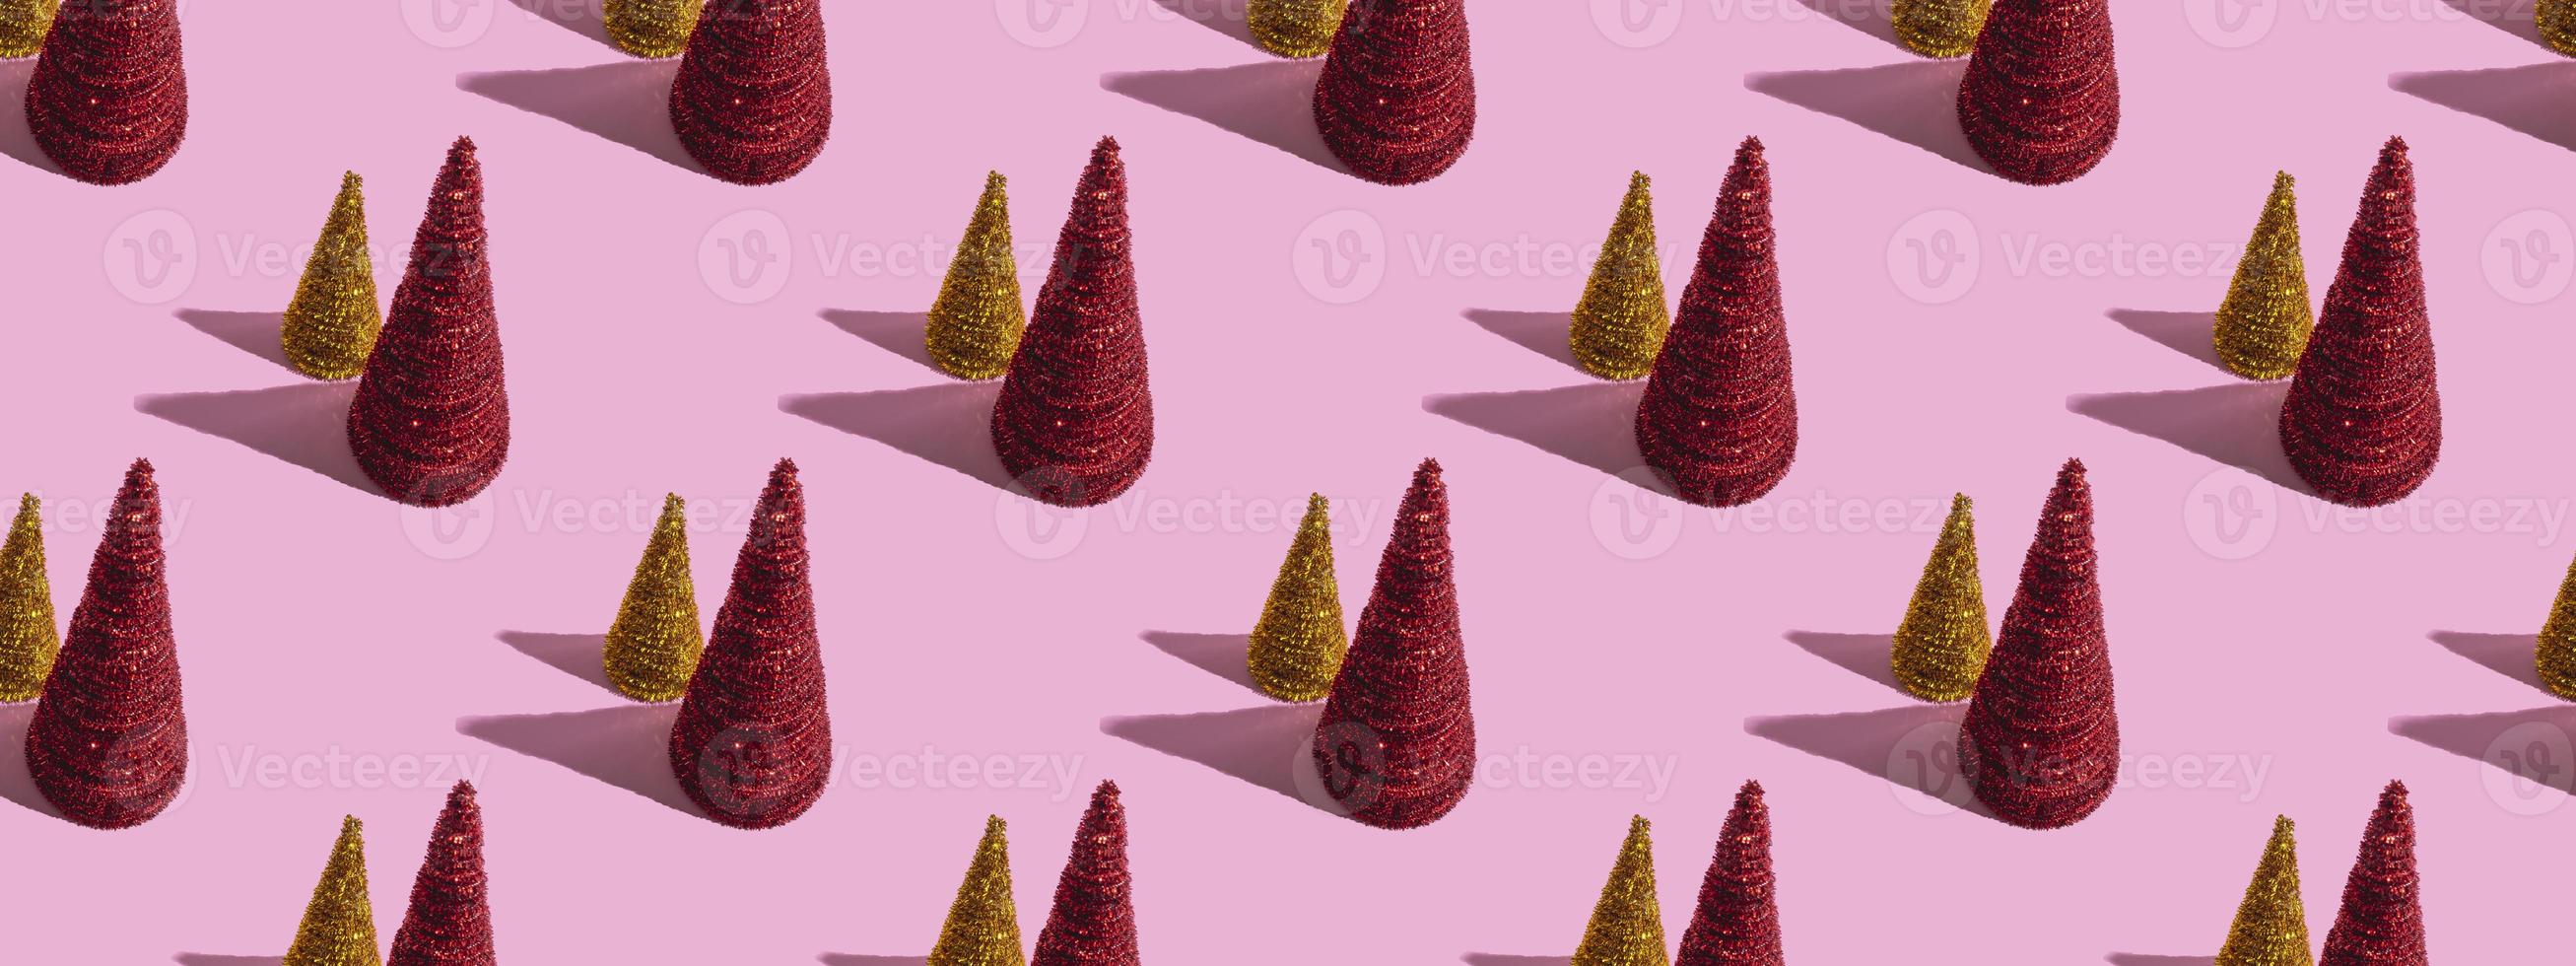 árvores de Natal coloridas em um fundo rosa. conceito de natal, padrão sem emenda foto